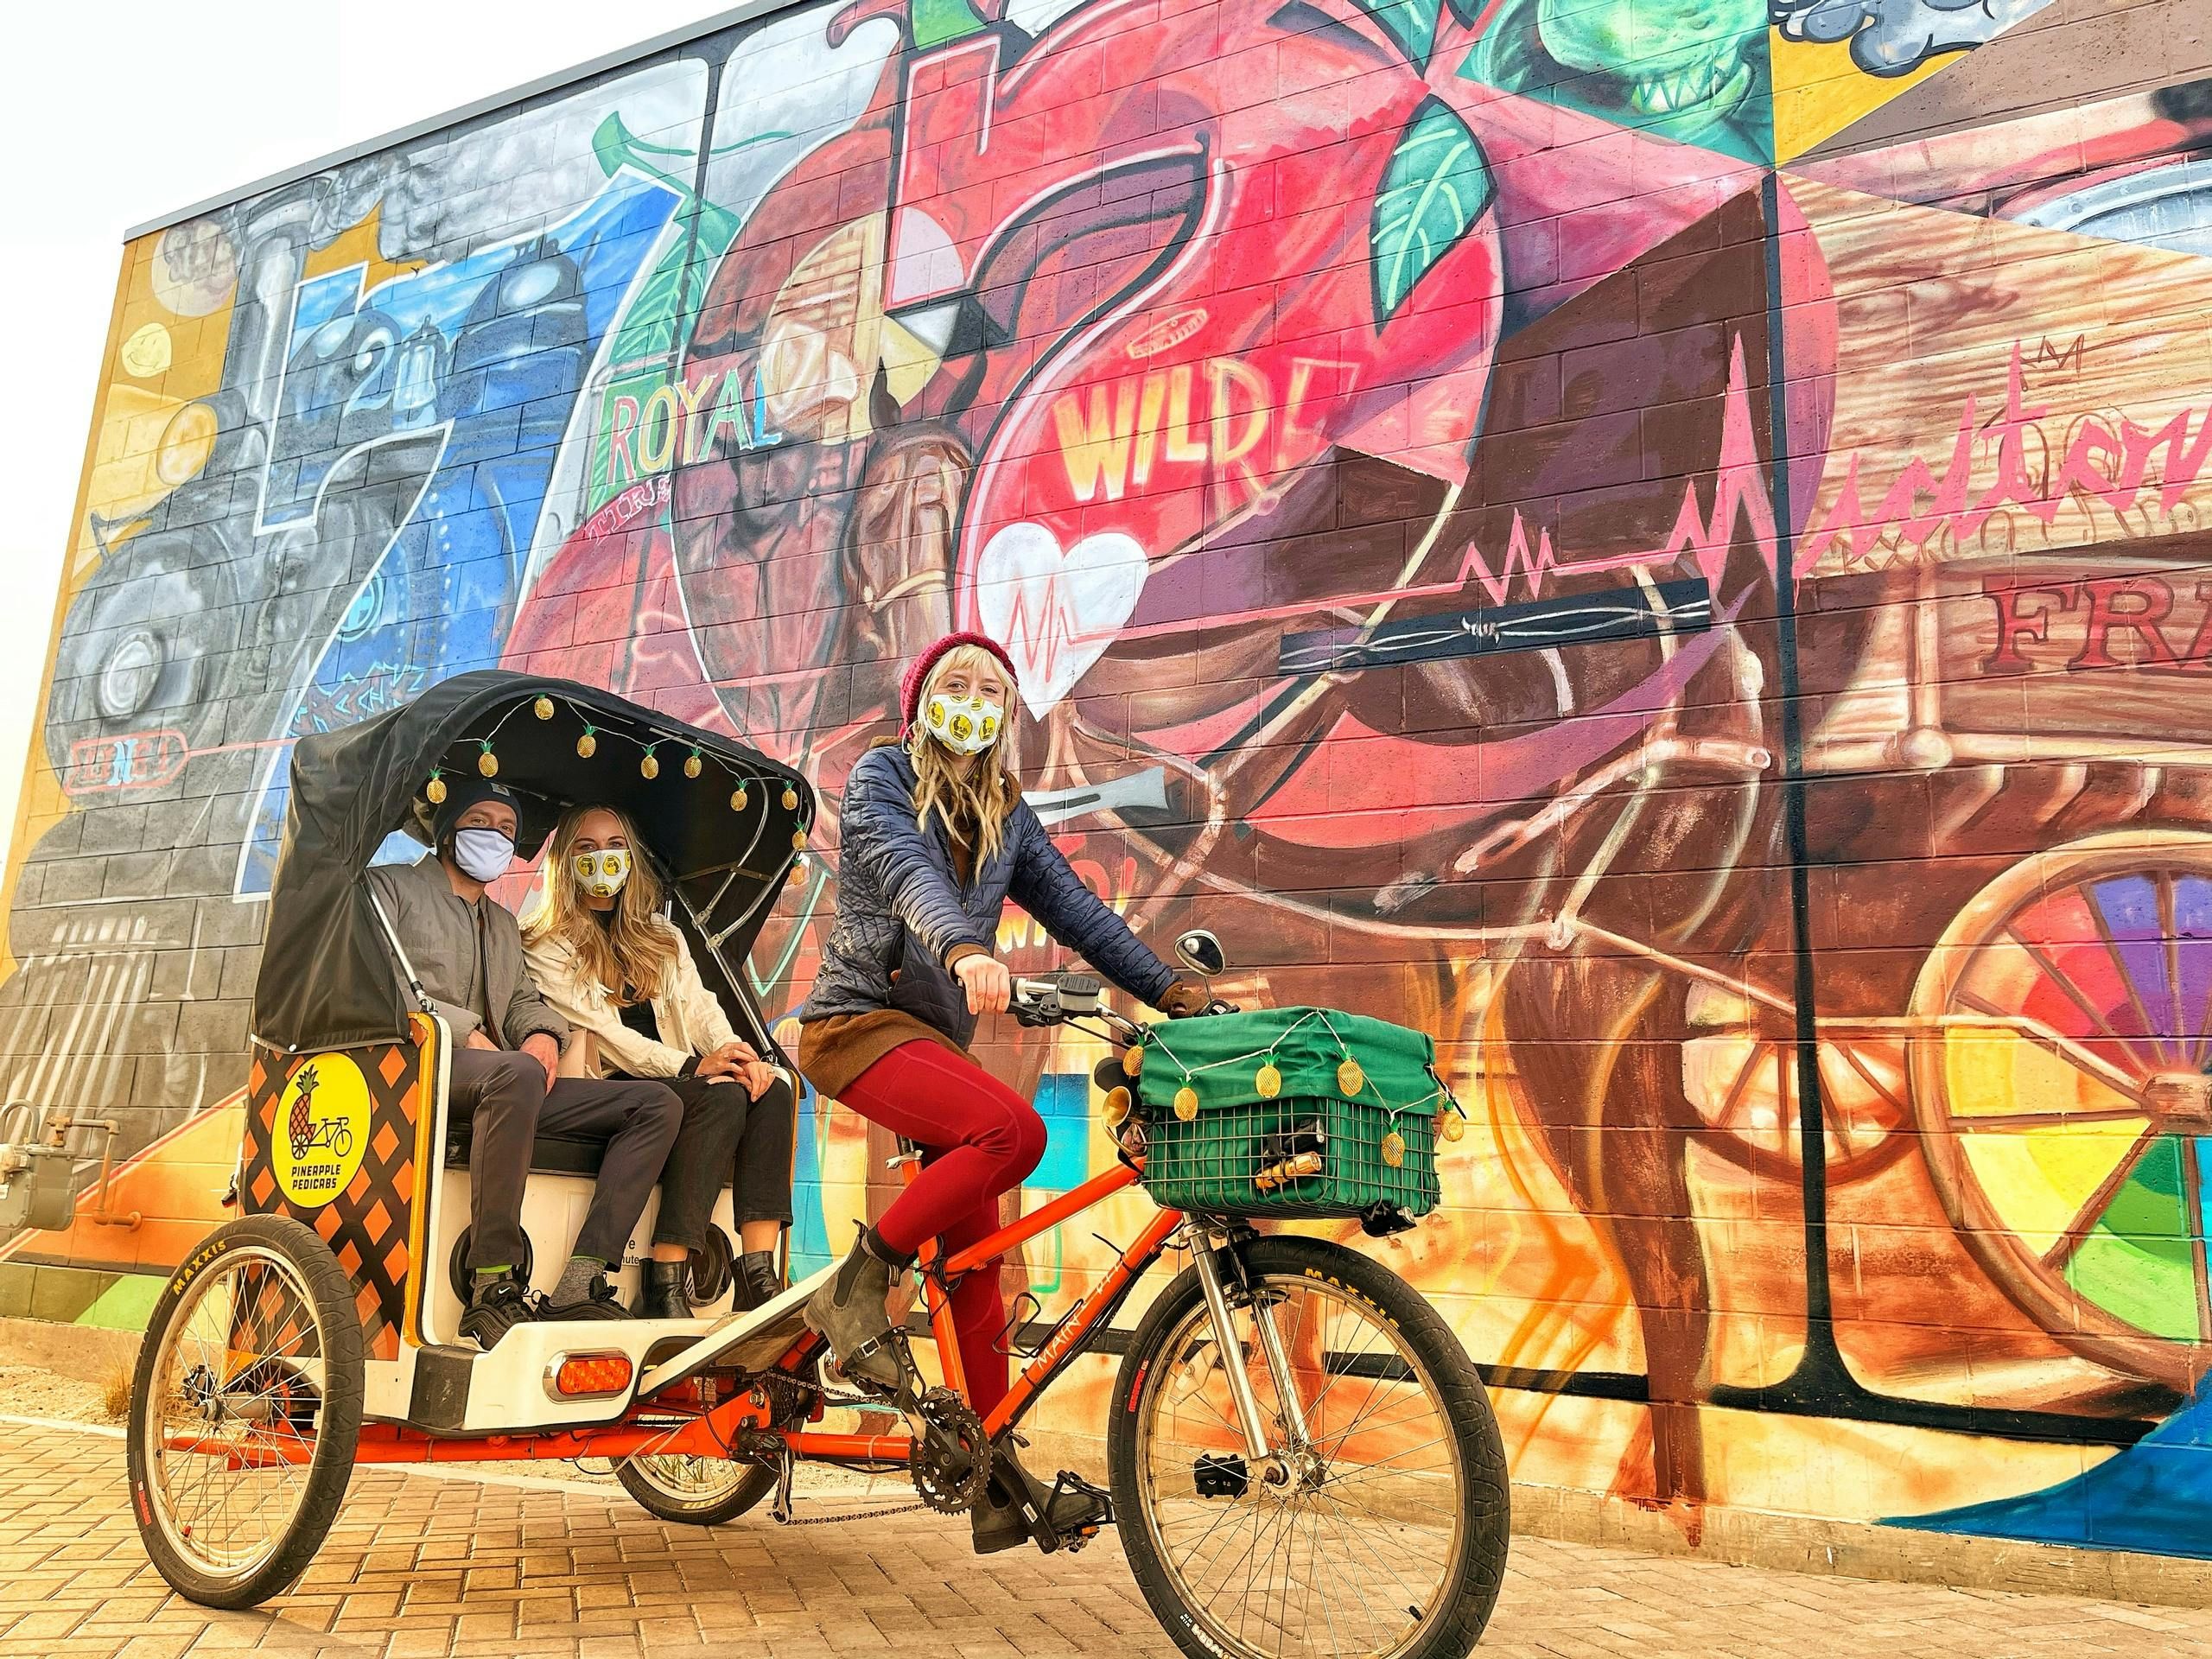 Imagen del tour: Recorrido en bicitaxi por el mural de Midtown Reno